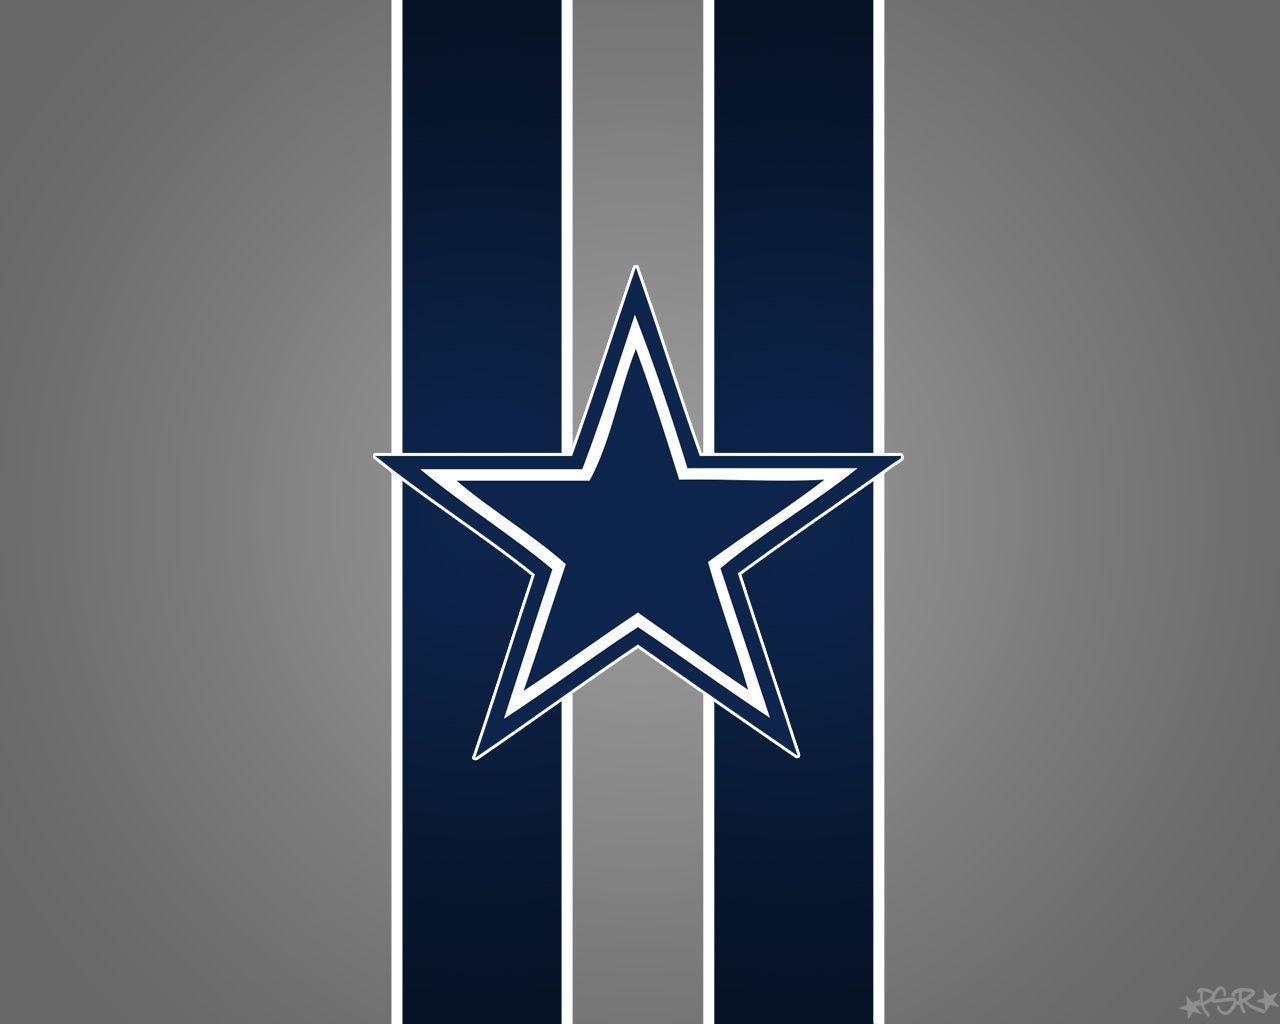 Enjoy this new Dallas Cowboys desktop background. Dallas Cowboys